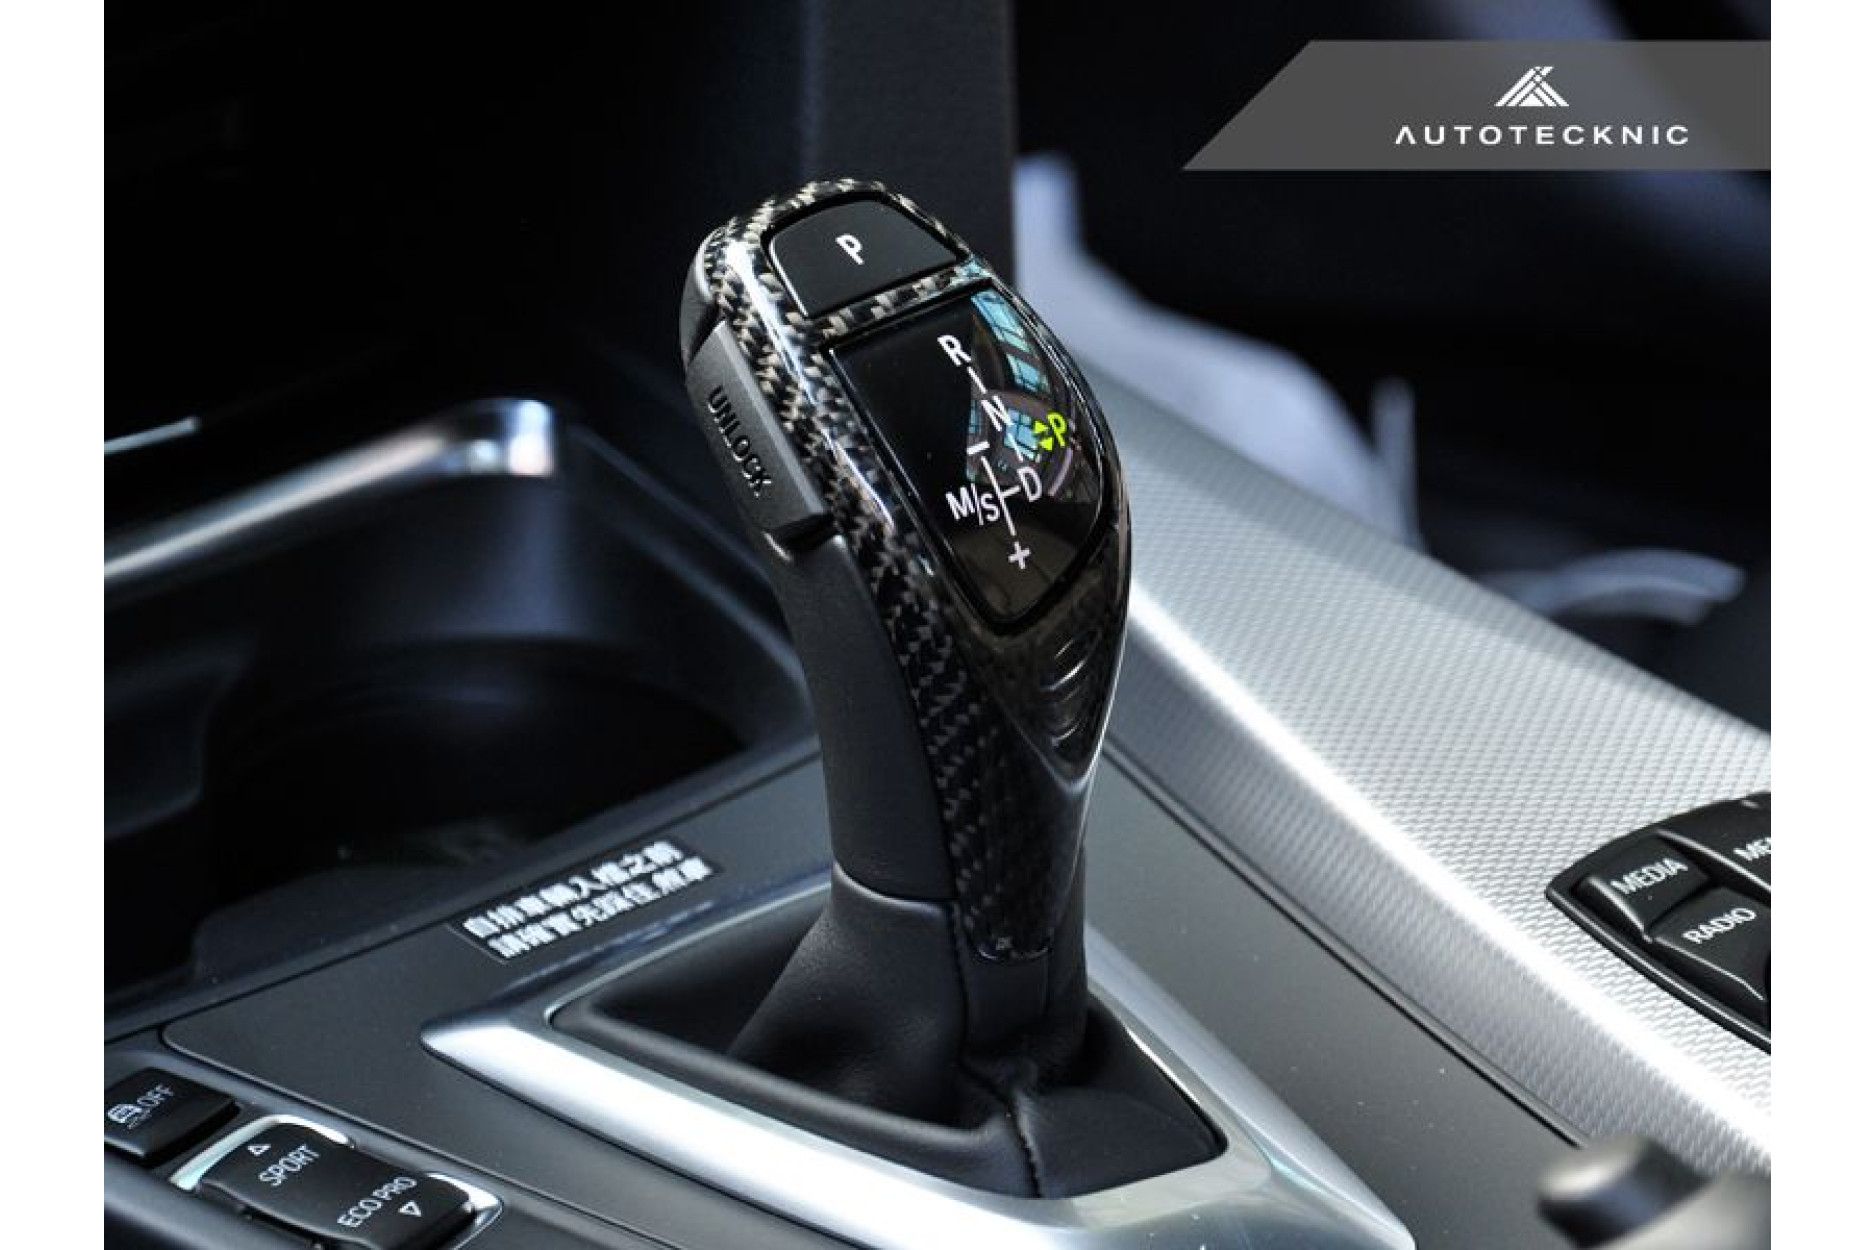 50% heiße Verkäufe Automatische Stick Carbon Faser Auto Trim Kopf Abdeckung  Schaltknauf fit für BMW E46